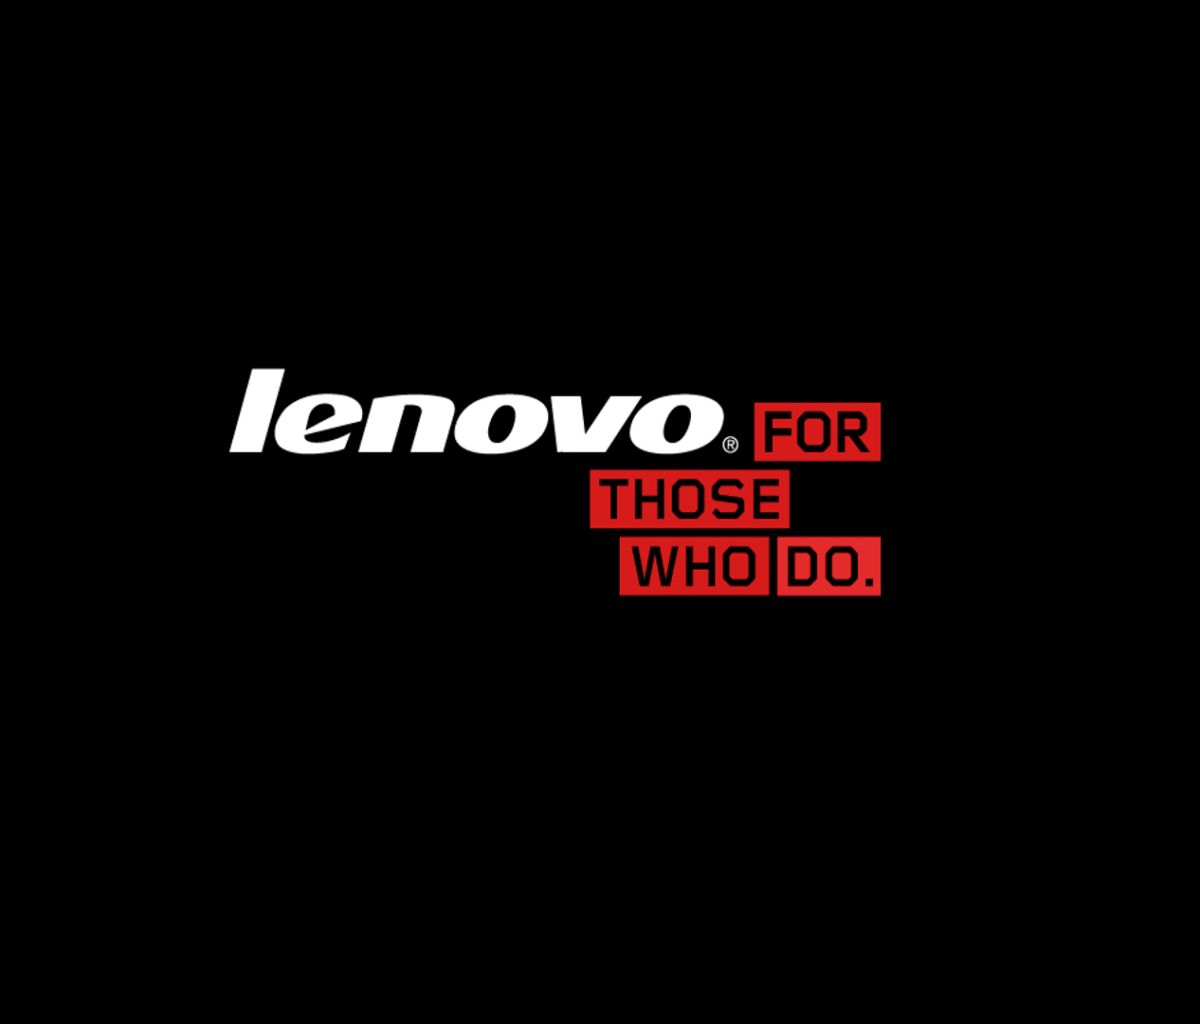 Lenovo For Mobile  lenovo mobile HD phone wallpaper  Pxfuel